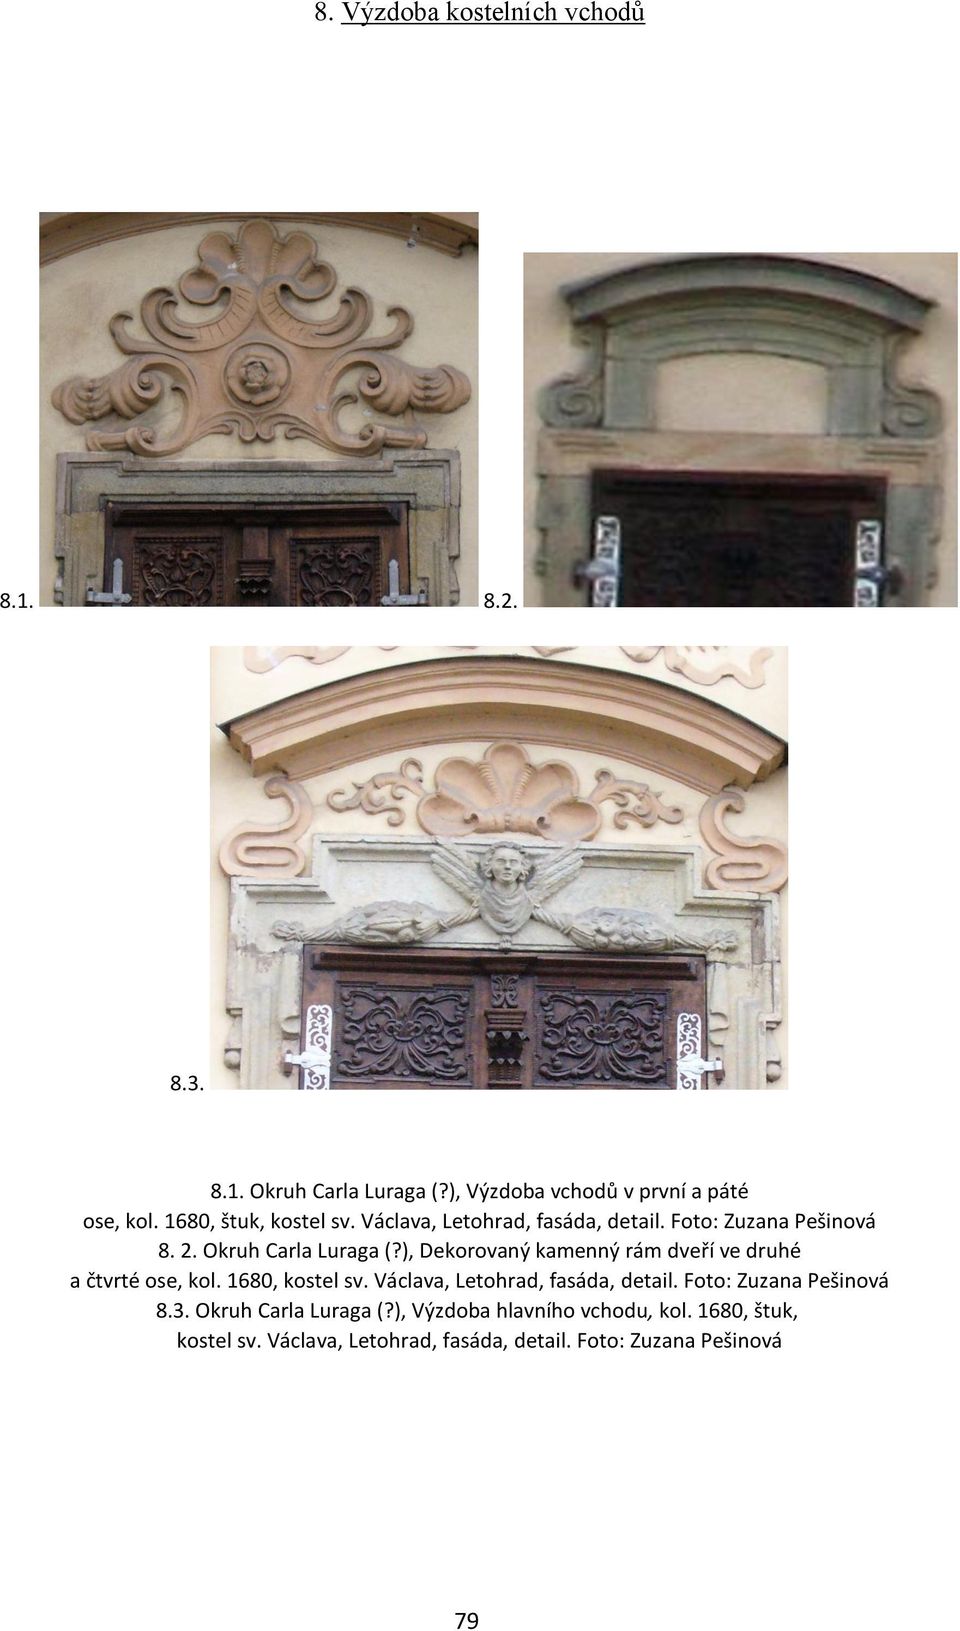 ), Dekorovaný kamenný rám dveří ve druhé a čtvrté ose, kol. 1680, kostel sv. Václava, Letohrad, fasáda, detail.